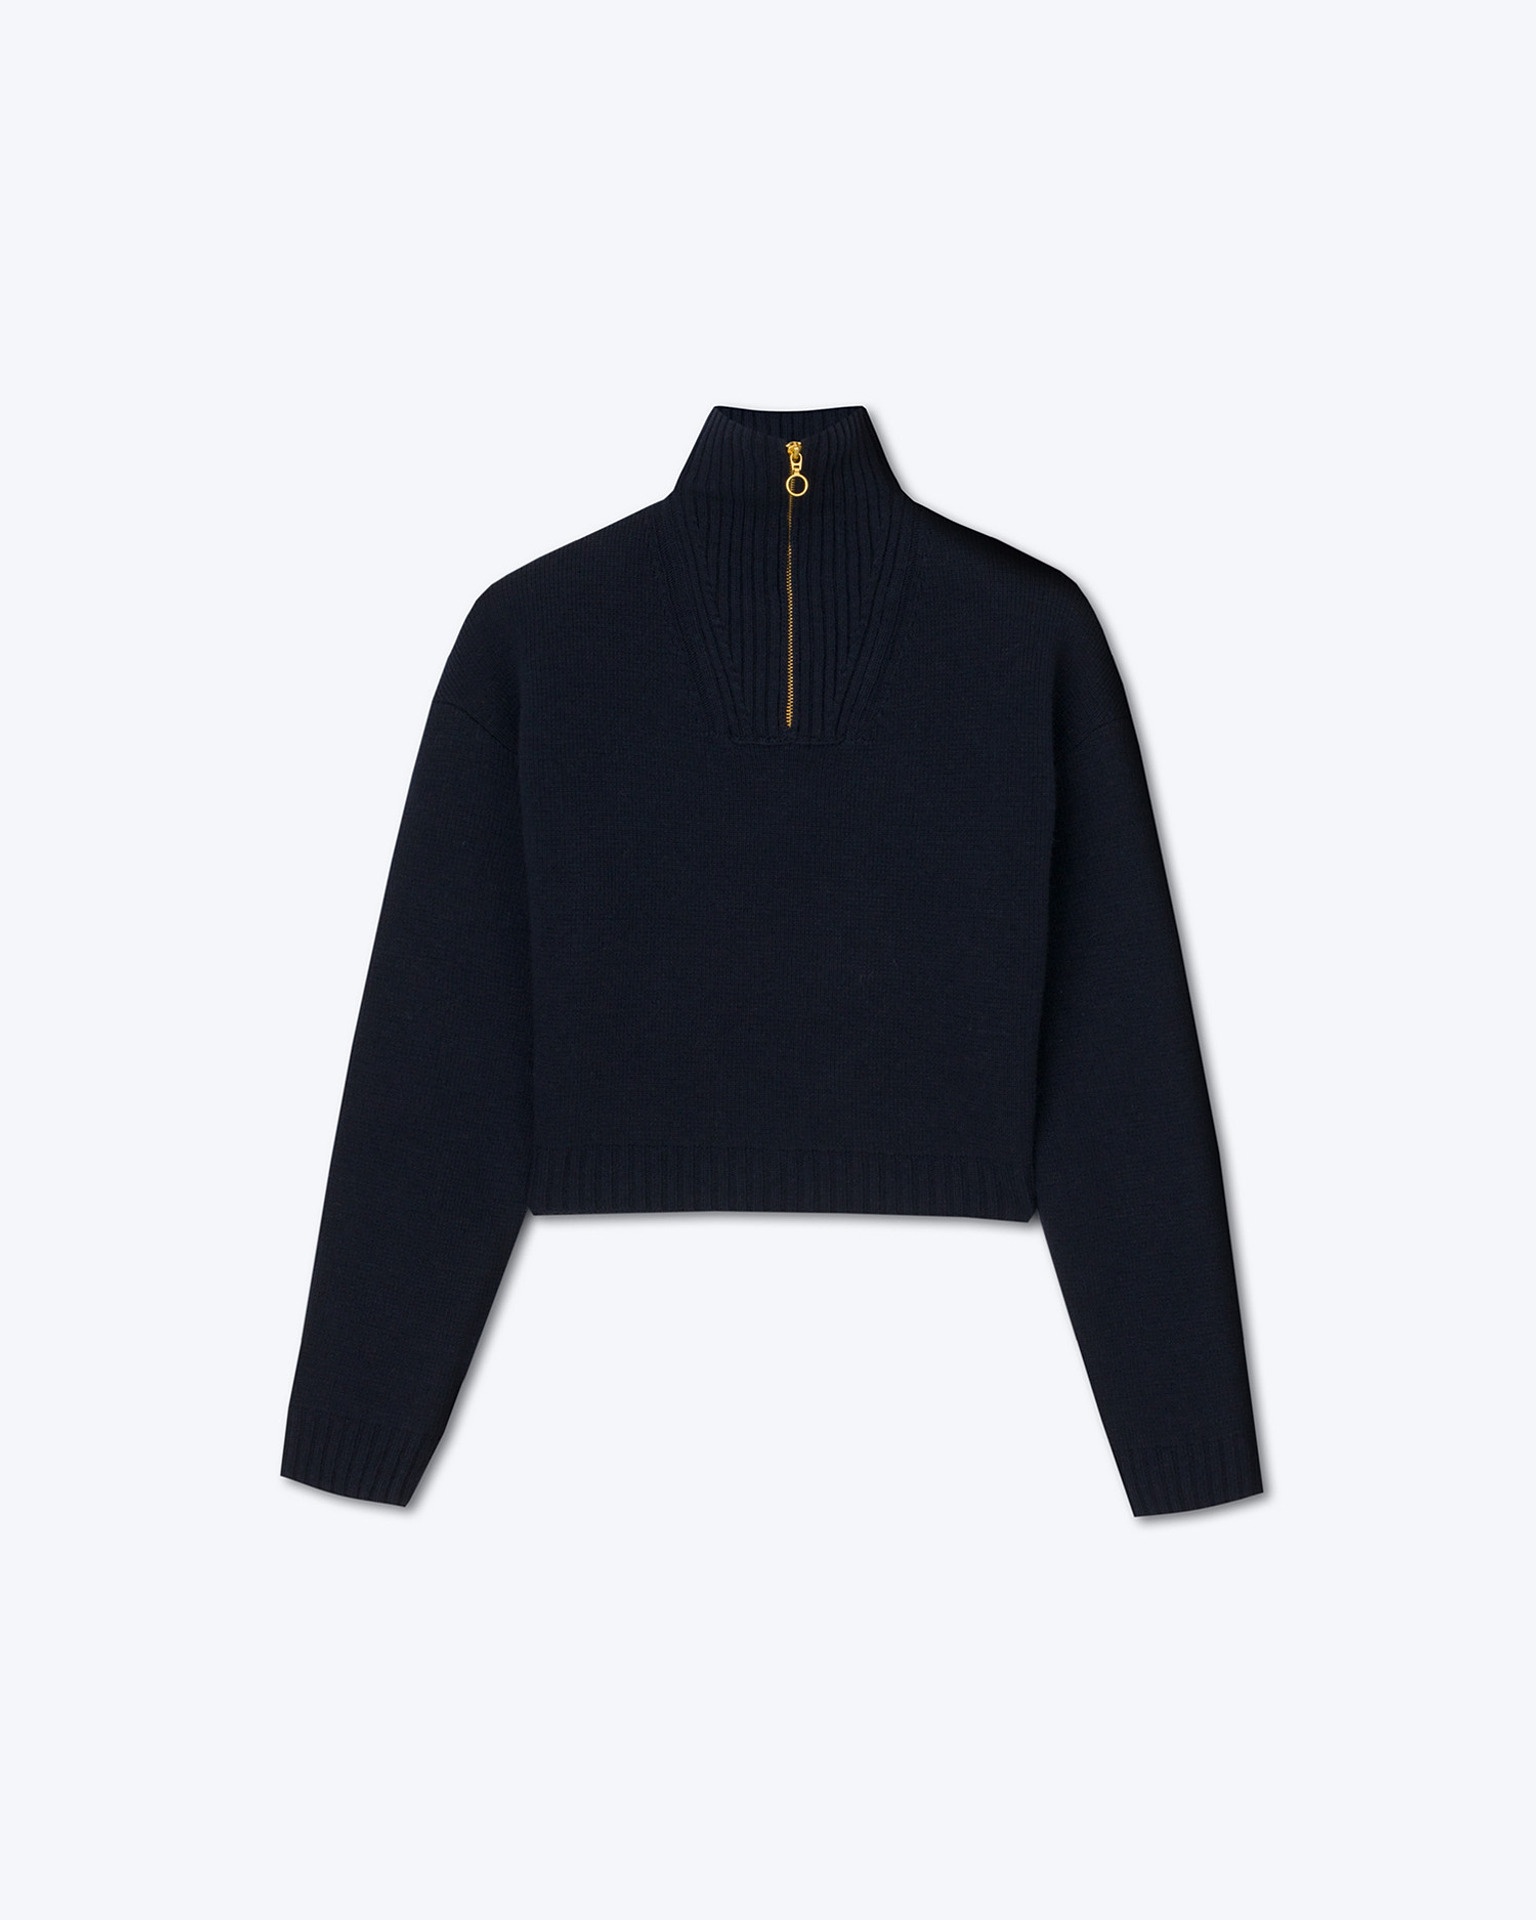 KIRA - Cashmere-blend sweater - Navy - 1